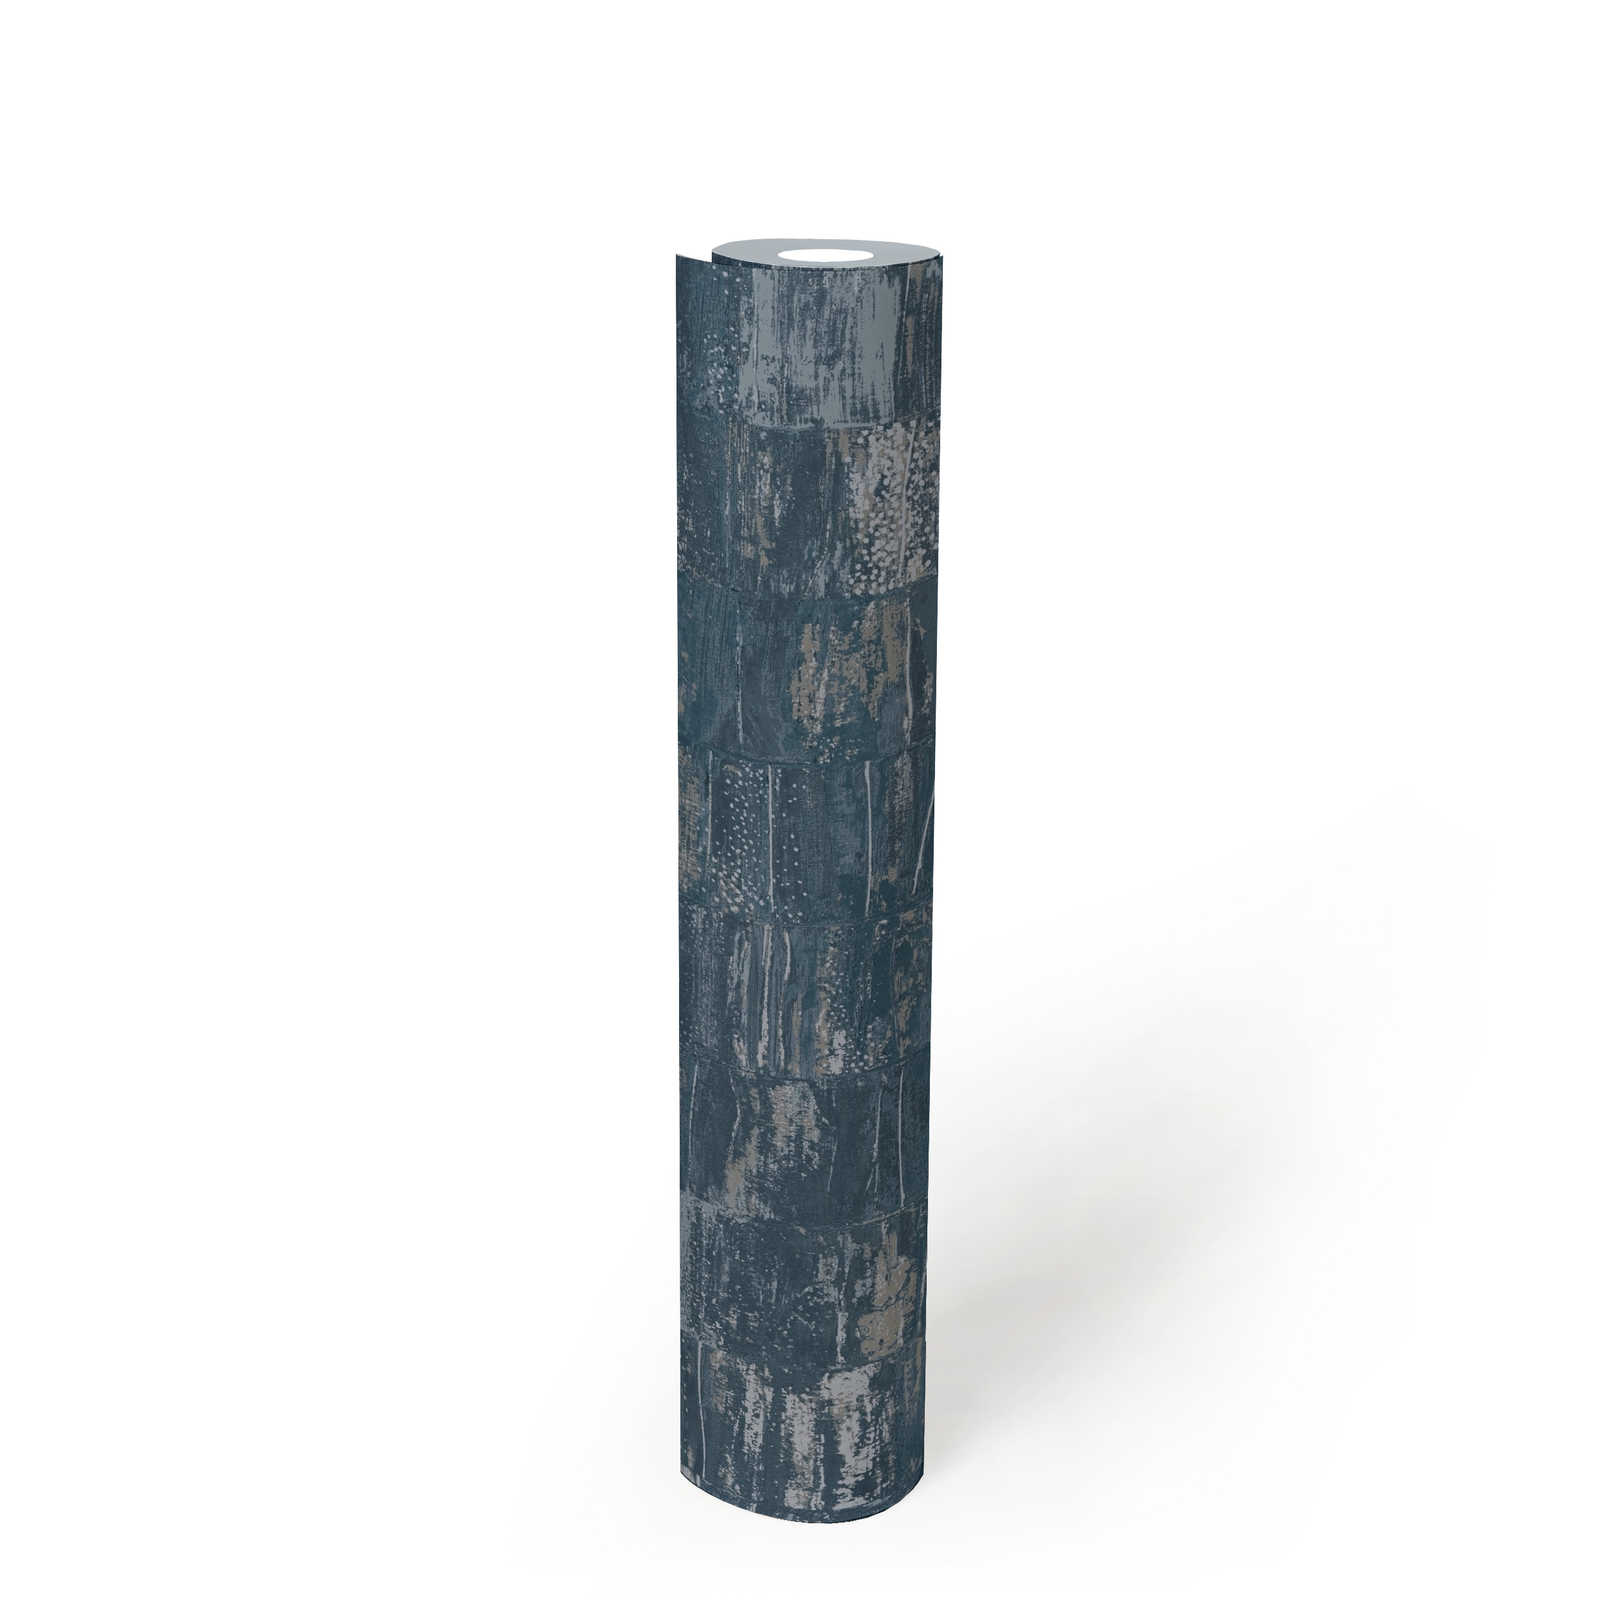             Papier peint intissé pétrole avec motif structuré aspect usé - bleu, gris
        